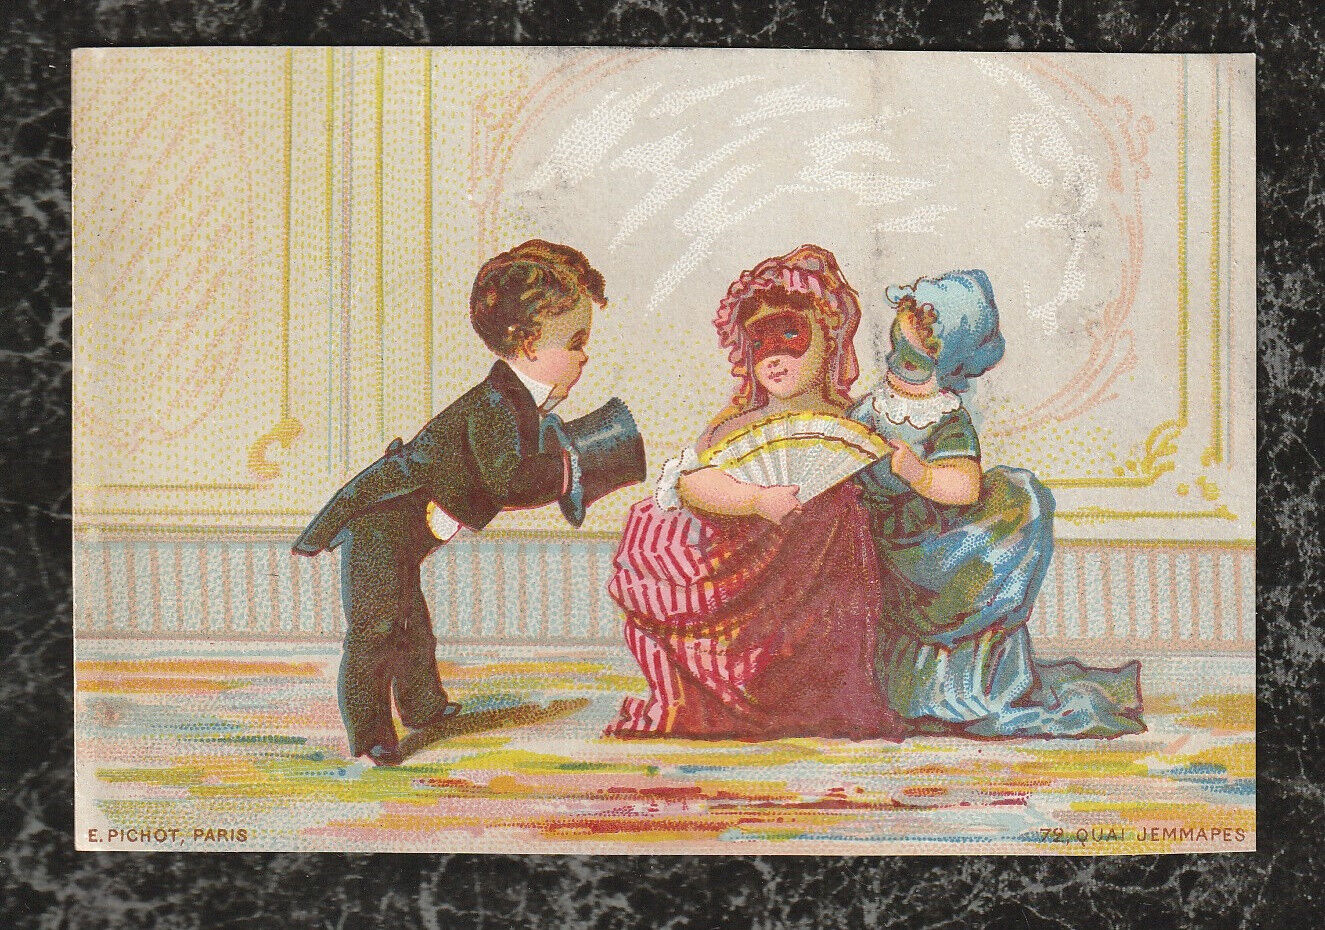 1876 Victorian French Trade Card E Pichot Printer Paris Philadelphia Exhibition